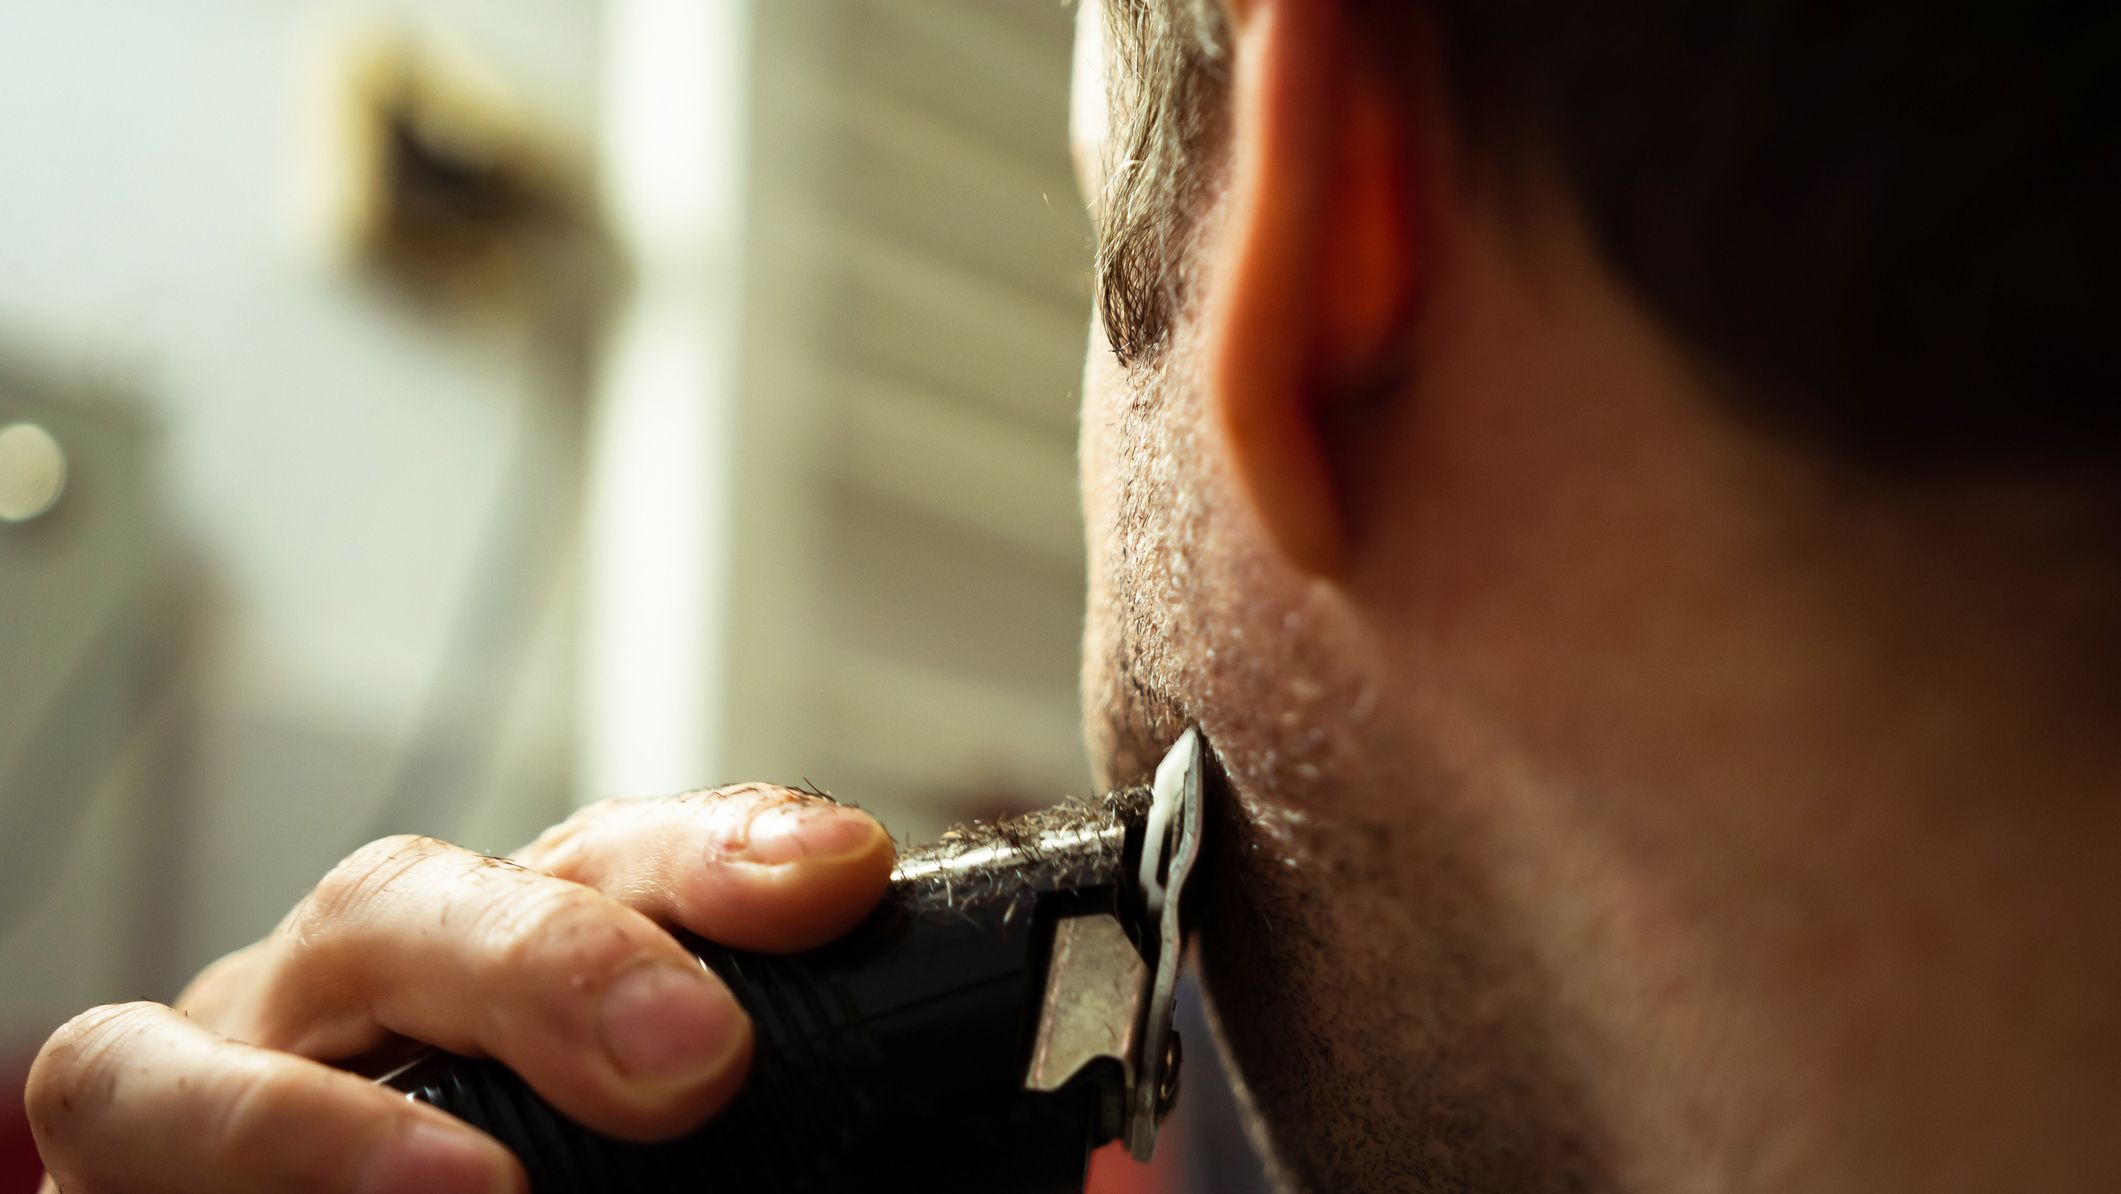 Rasuradora Electrica Afeitadora Recargable Inalambrica Para Hombre Barba  Bigote